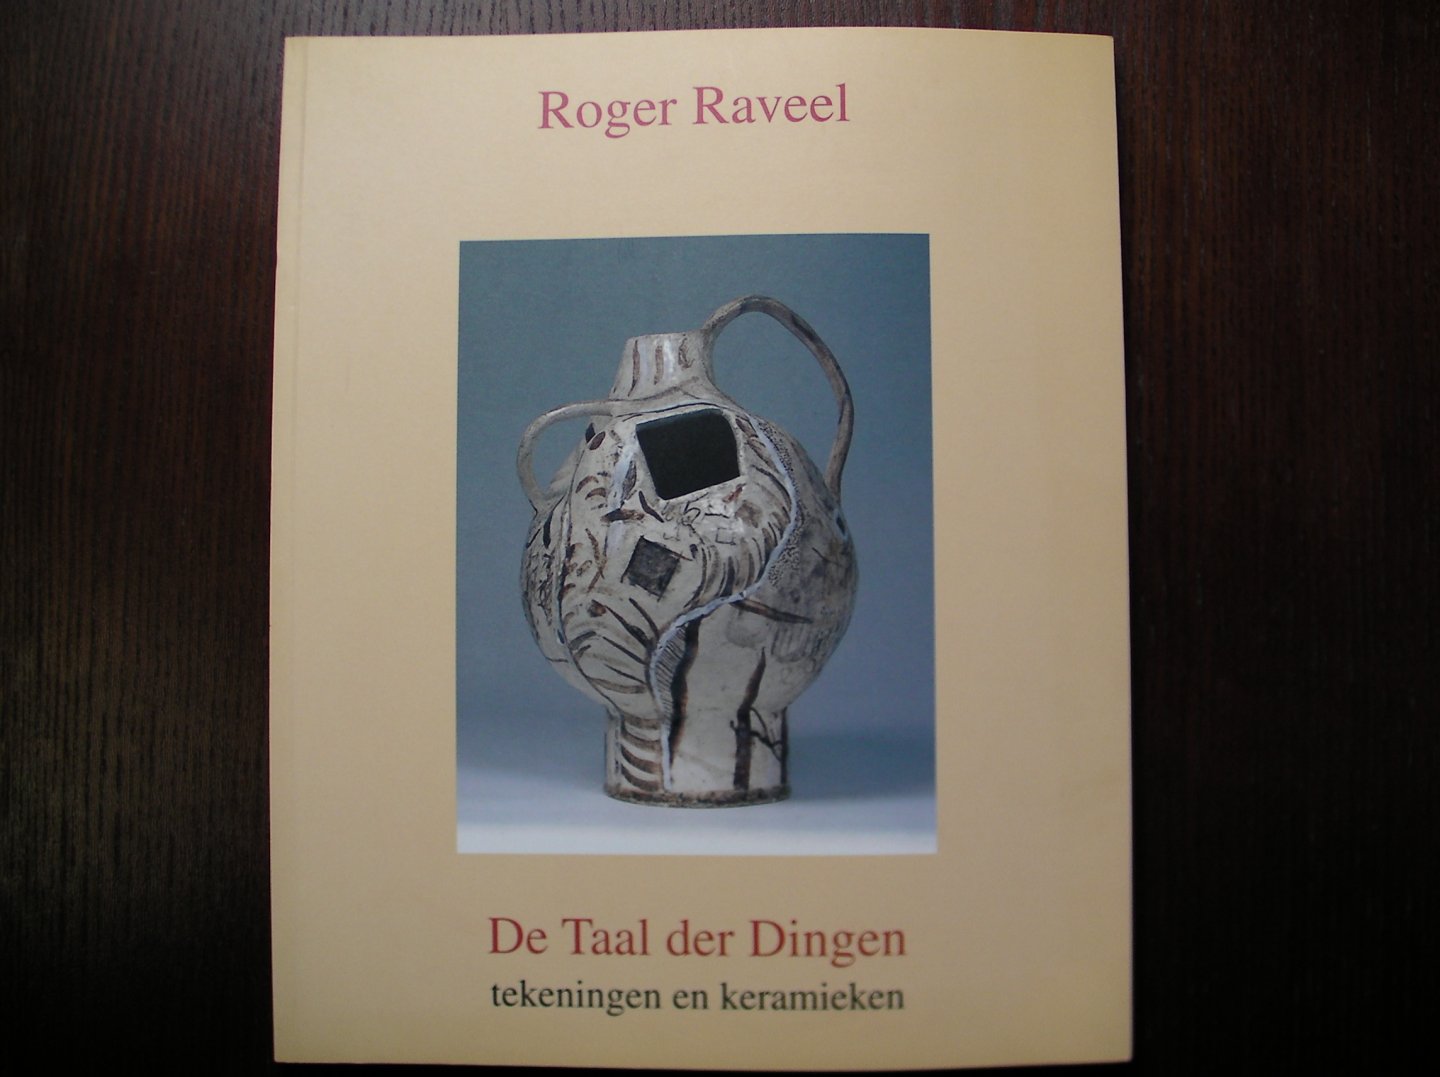  - Roger Raveel - de taal der dingen